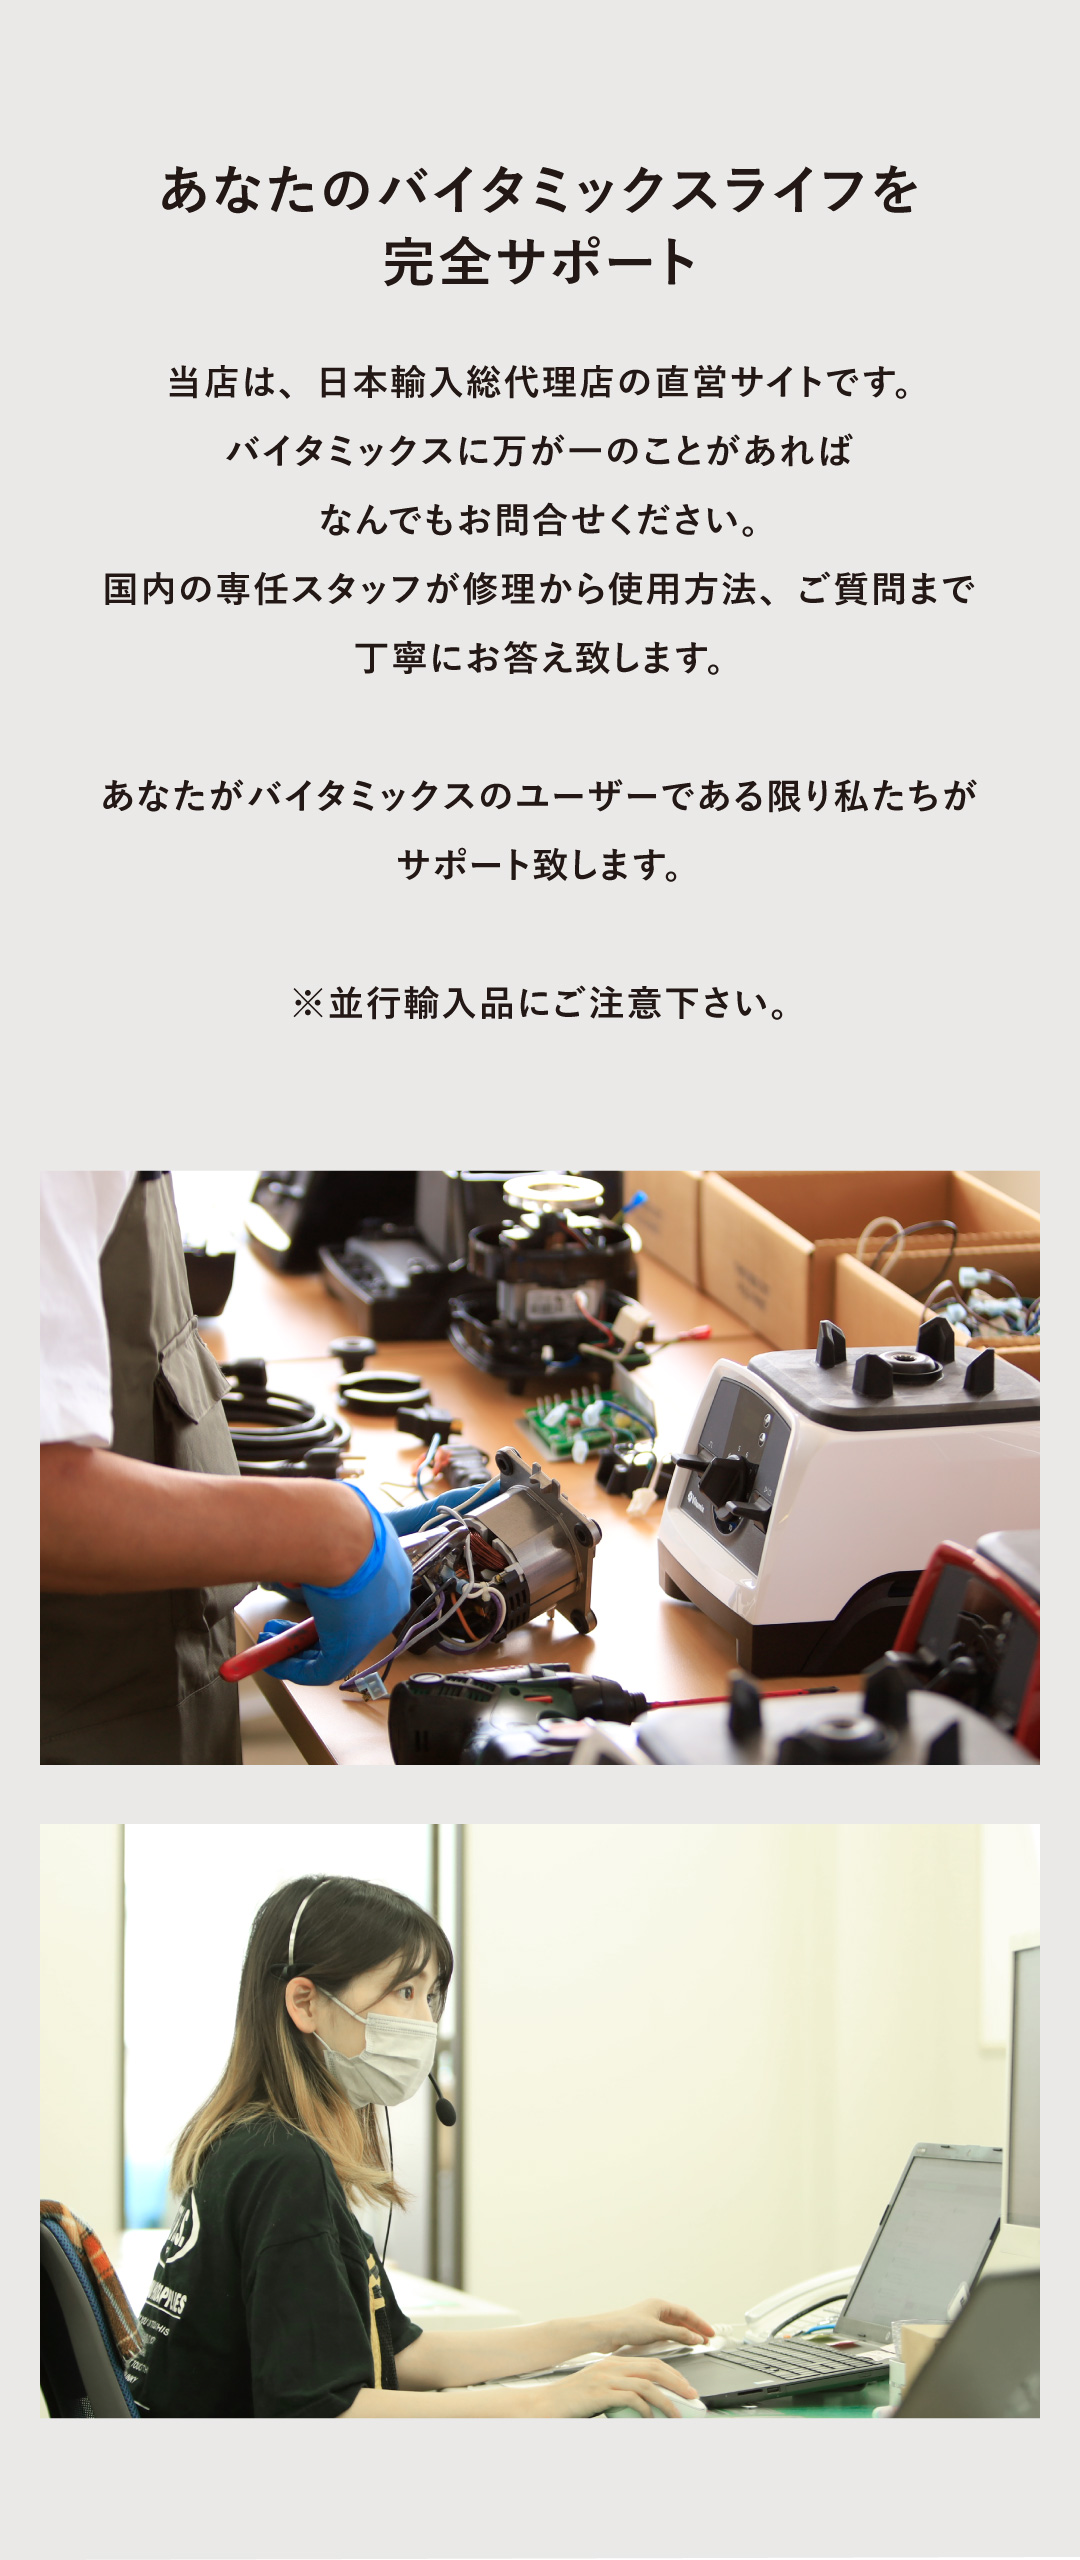 バイタミックス Vitamix バイタミックスライフ 完全サポート 日本輸入総代理店 直営サイト 専任スタッフ お問い合わせ 修理 使用方法 質問